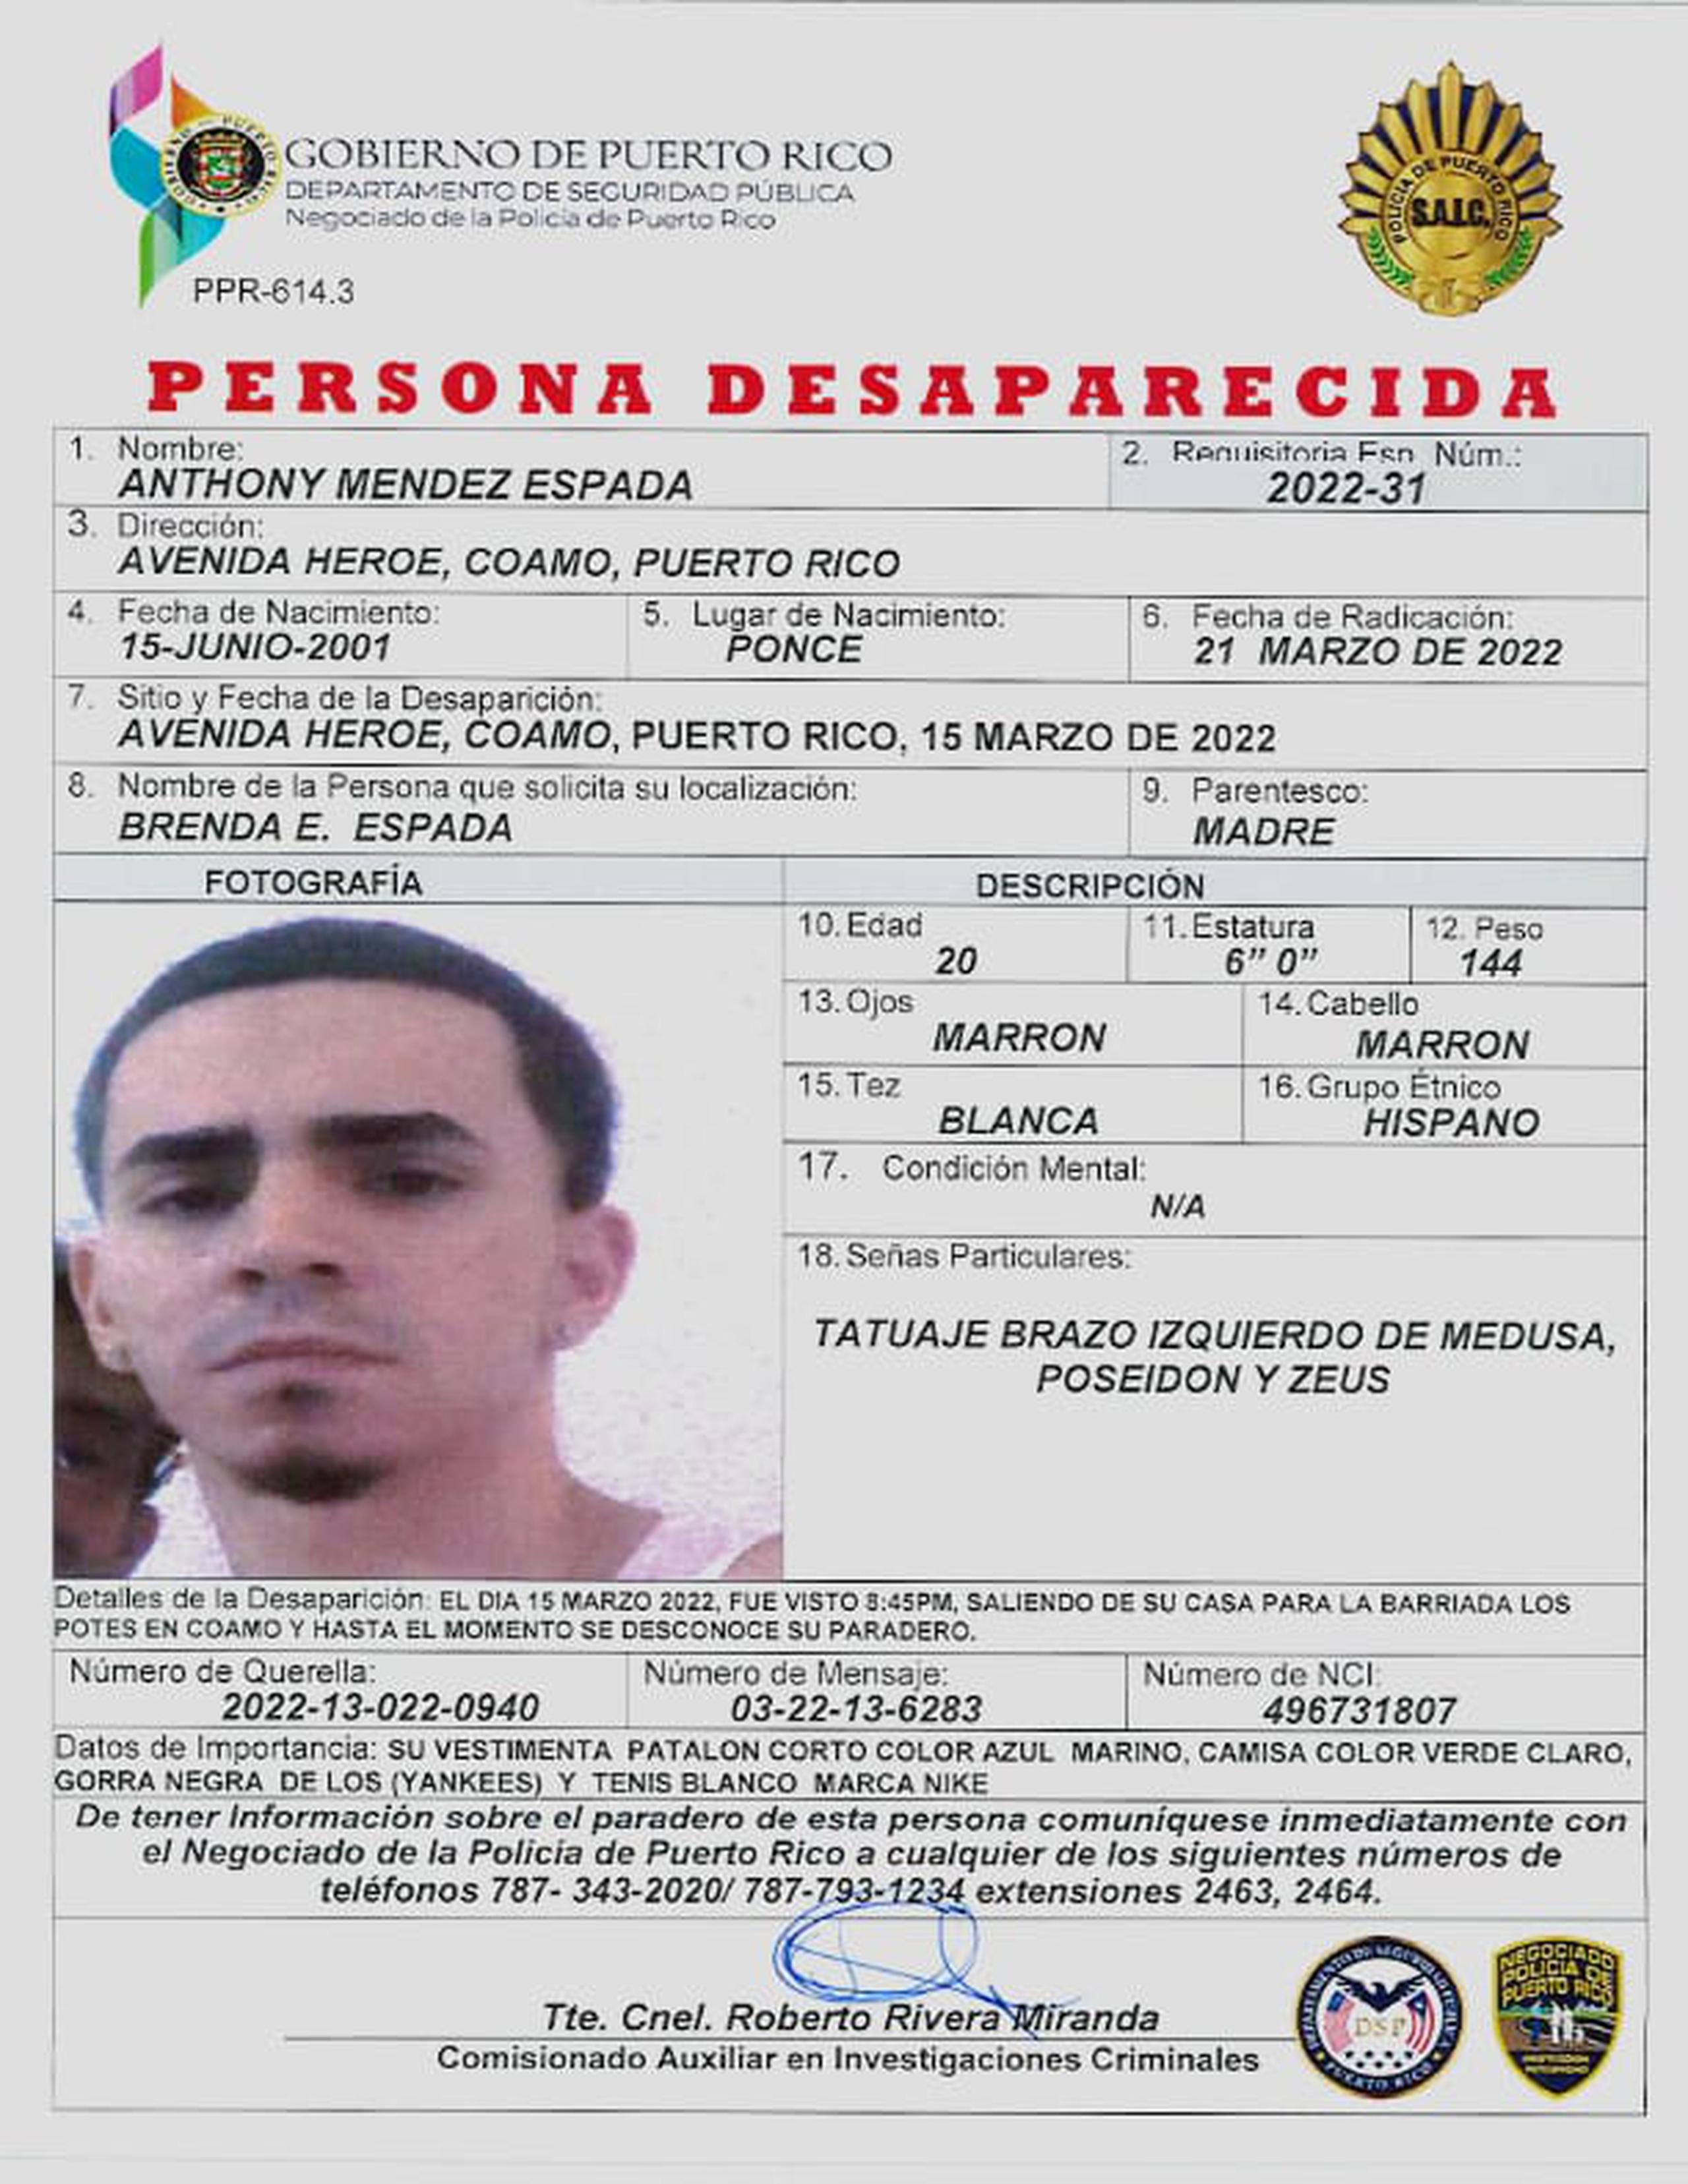 Anthony Méndez Espada de 20 años, se encuentra desaparecido desde el 15 de marzo cuando salió de su hogar localizada en la avenida Héroe, en Coamo, en dirección hacia la barriada Los Potes y nunca regresó.